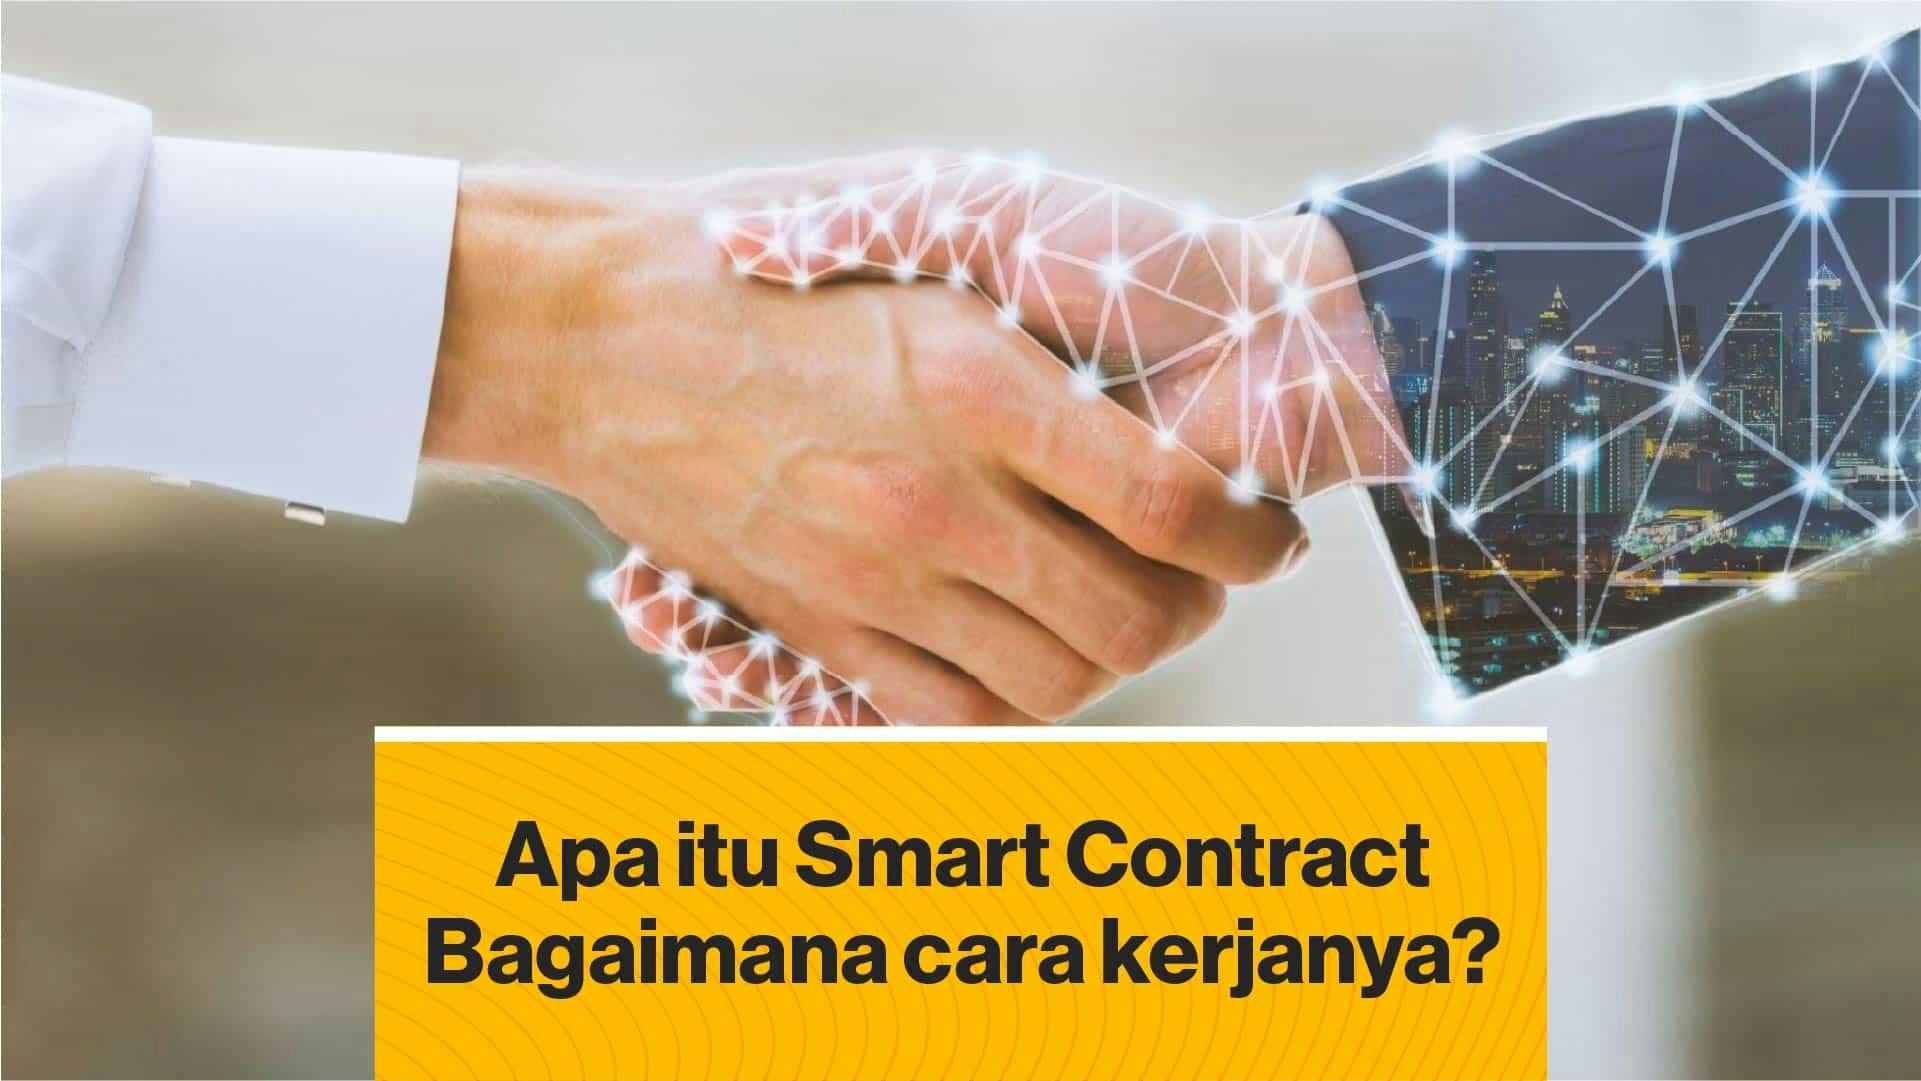 Apa itu Smart Contract dan Bagaimana cara kerjanya? (Coindesk Indonesia)